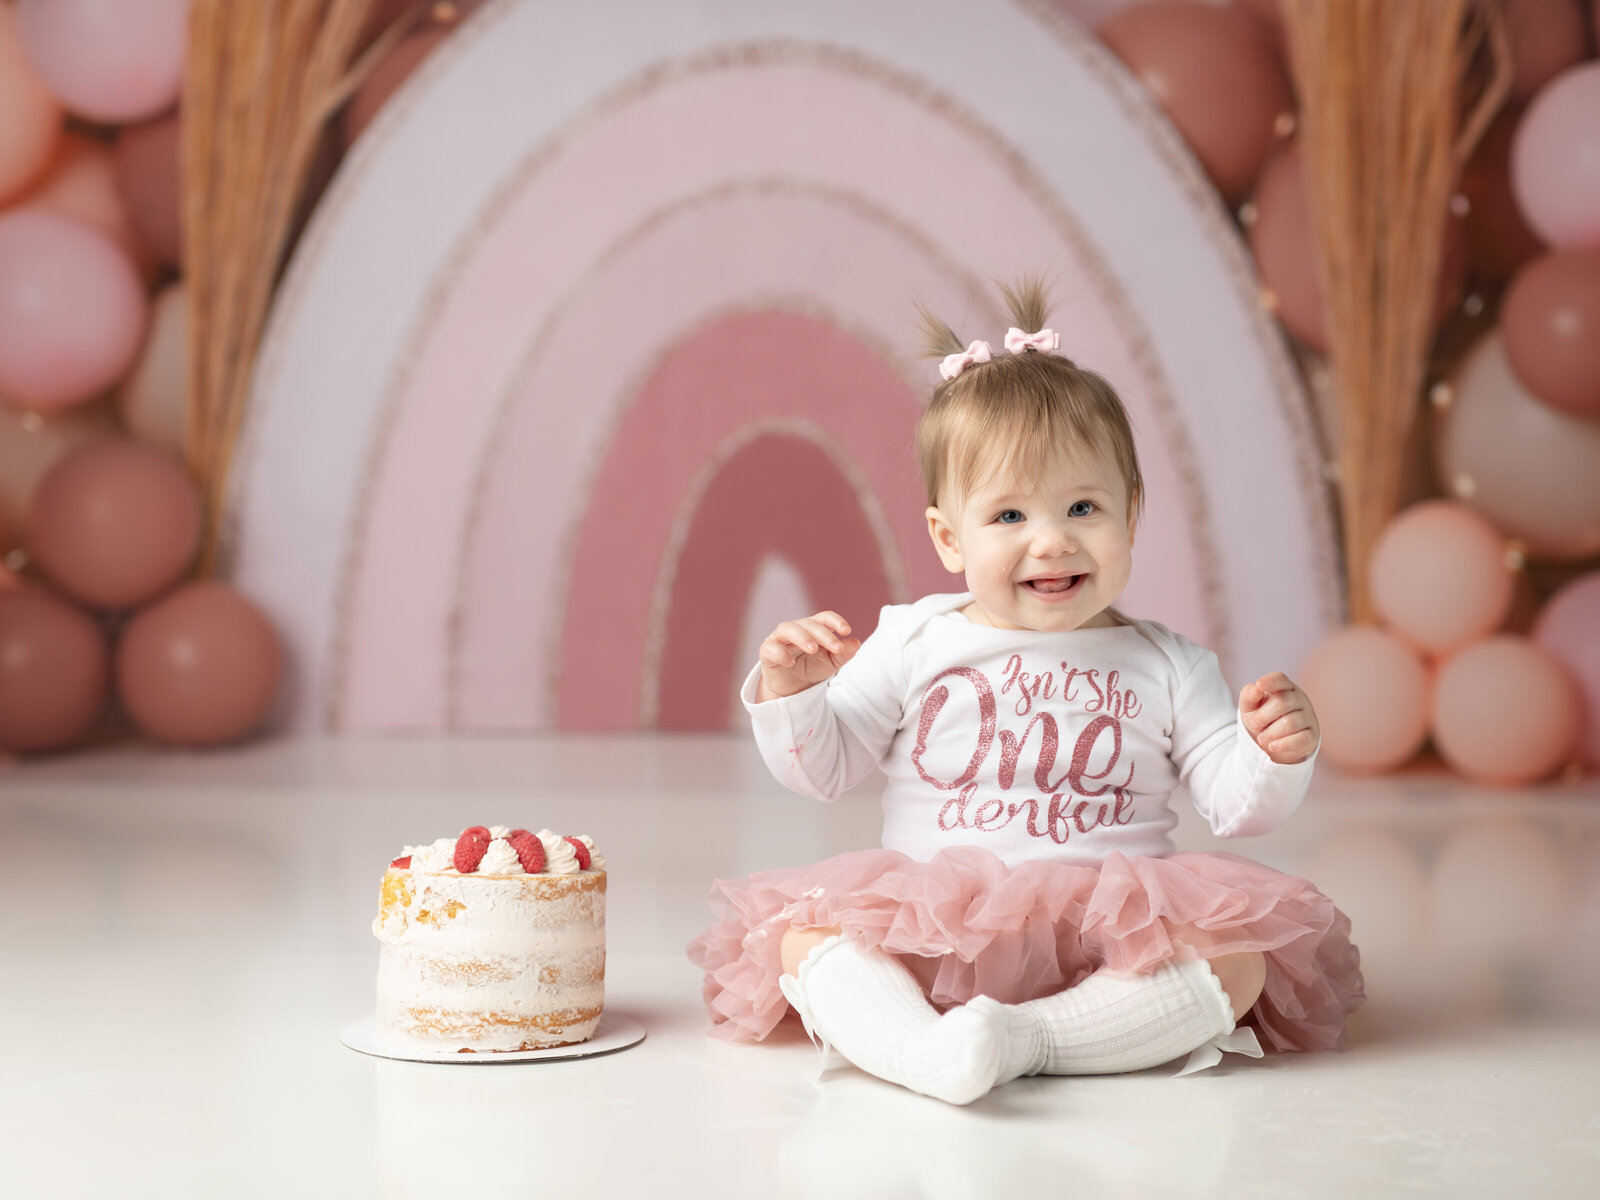 one year old girl sitting with cake and boho rainbow backdrop for cake smash photoshoot